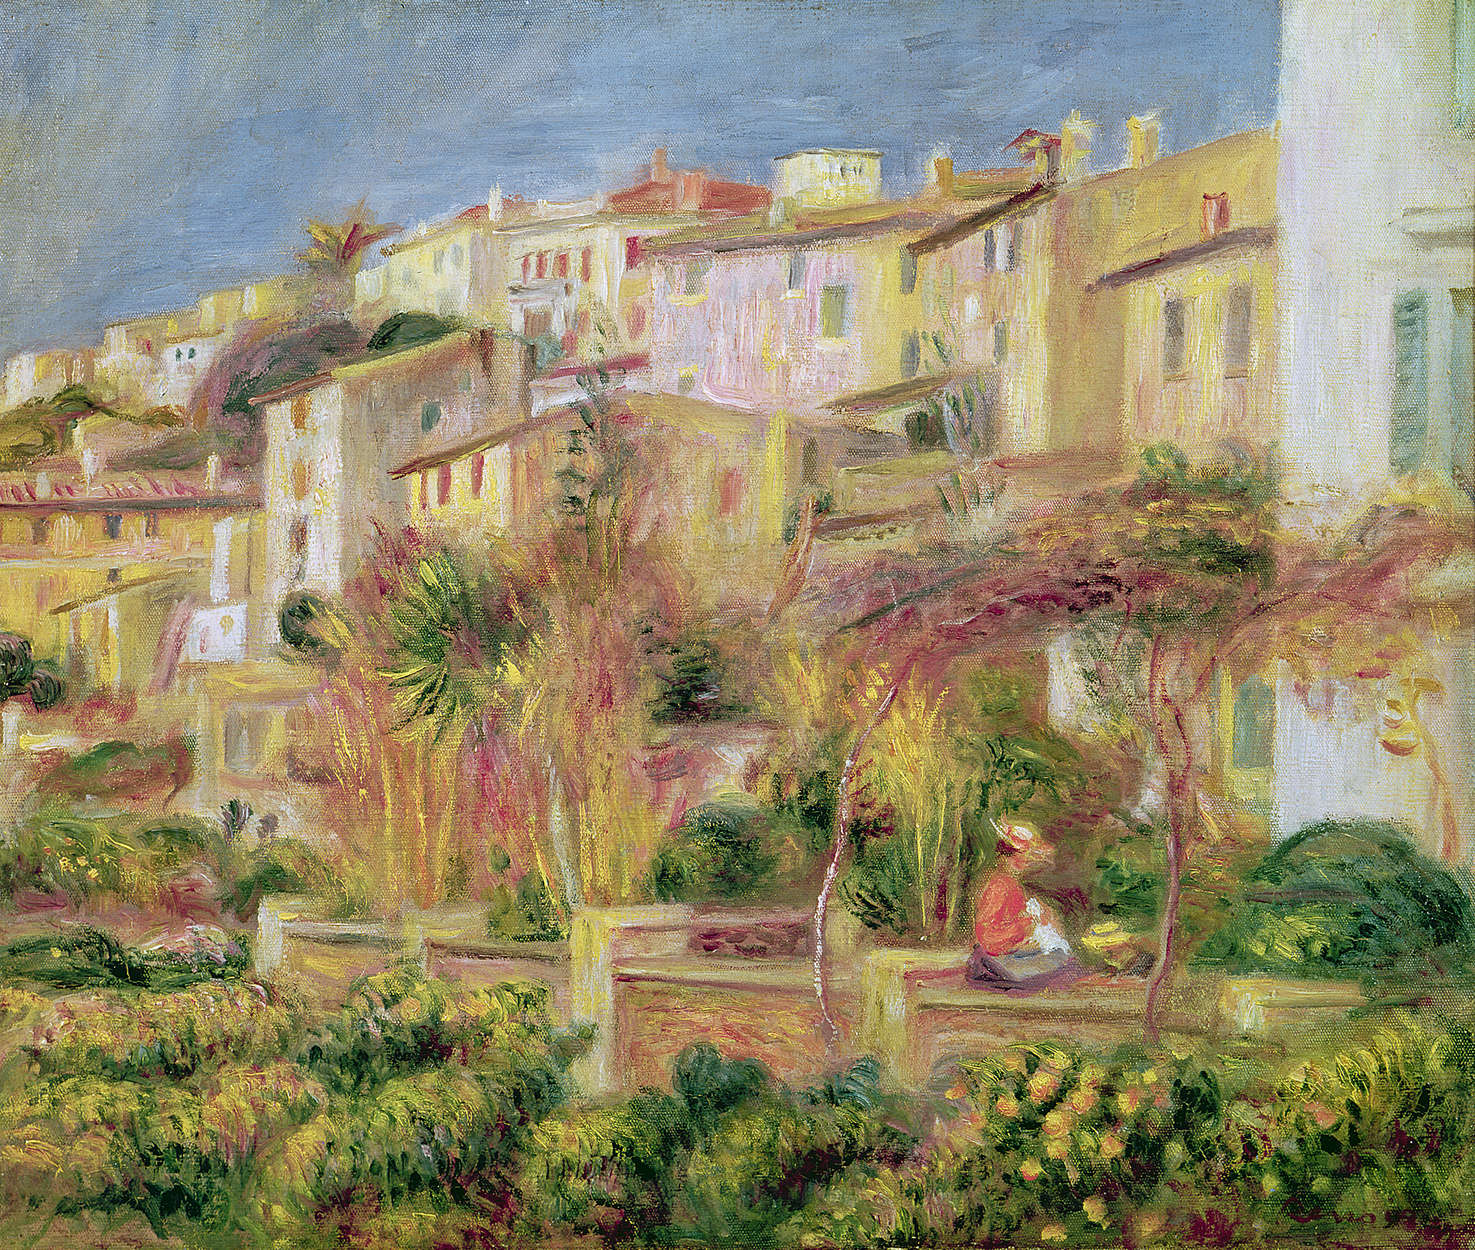             Terras in Cagnes" muurschildering van Pierre Auguste Renoir
        